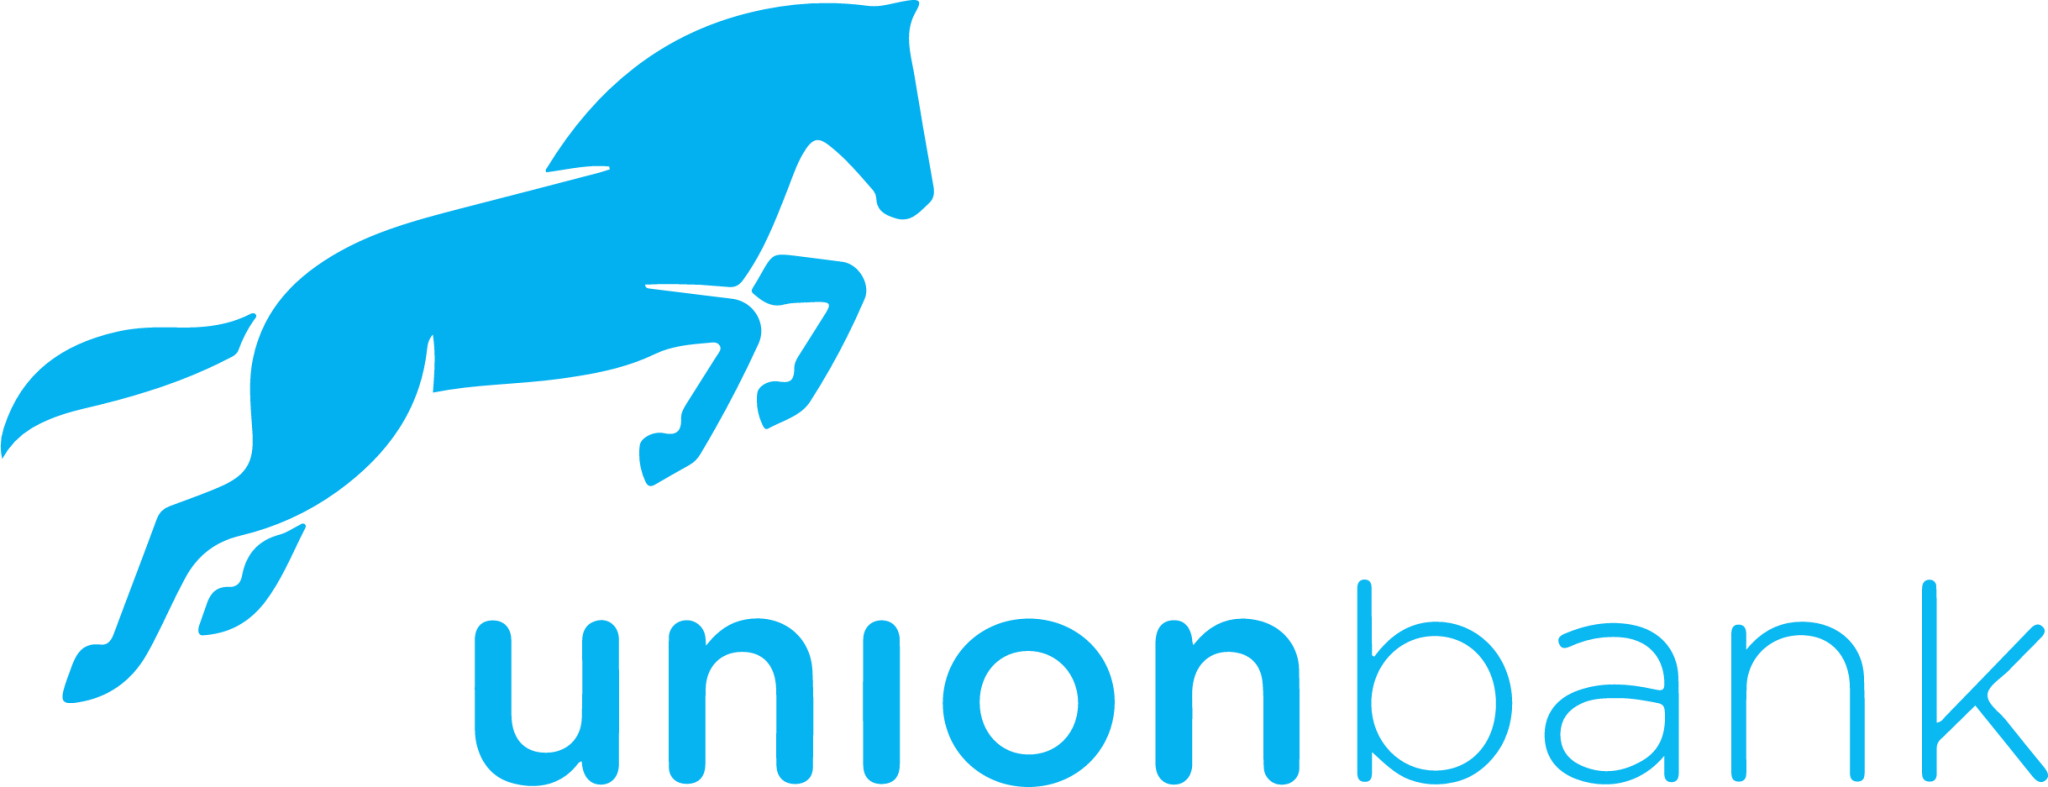 Uion Bank logo